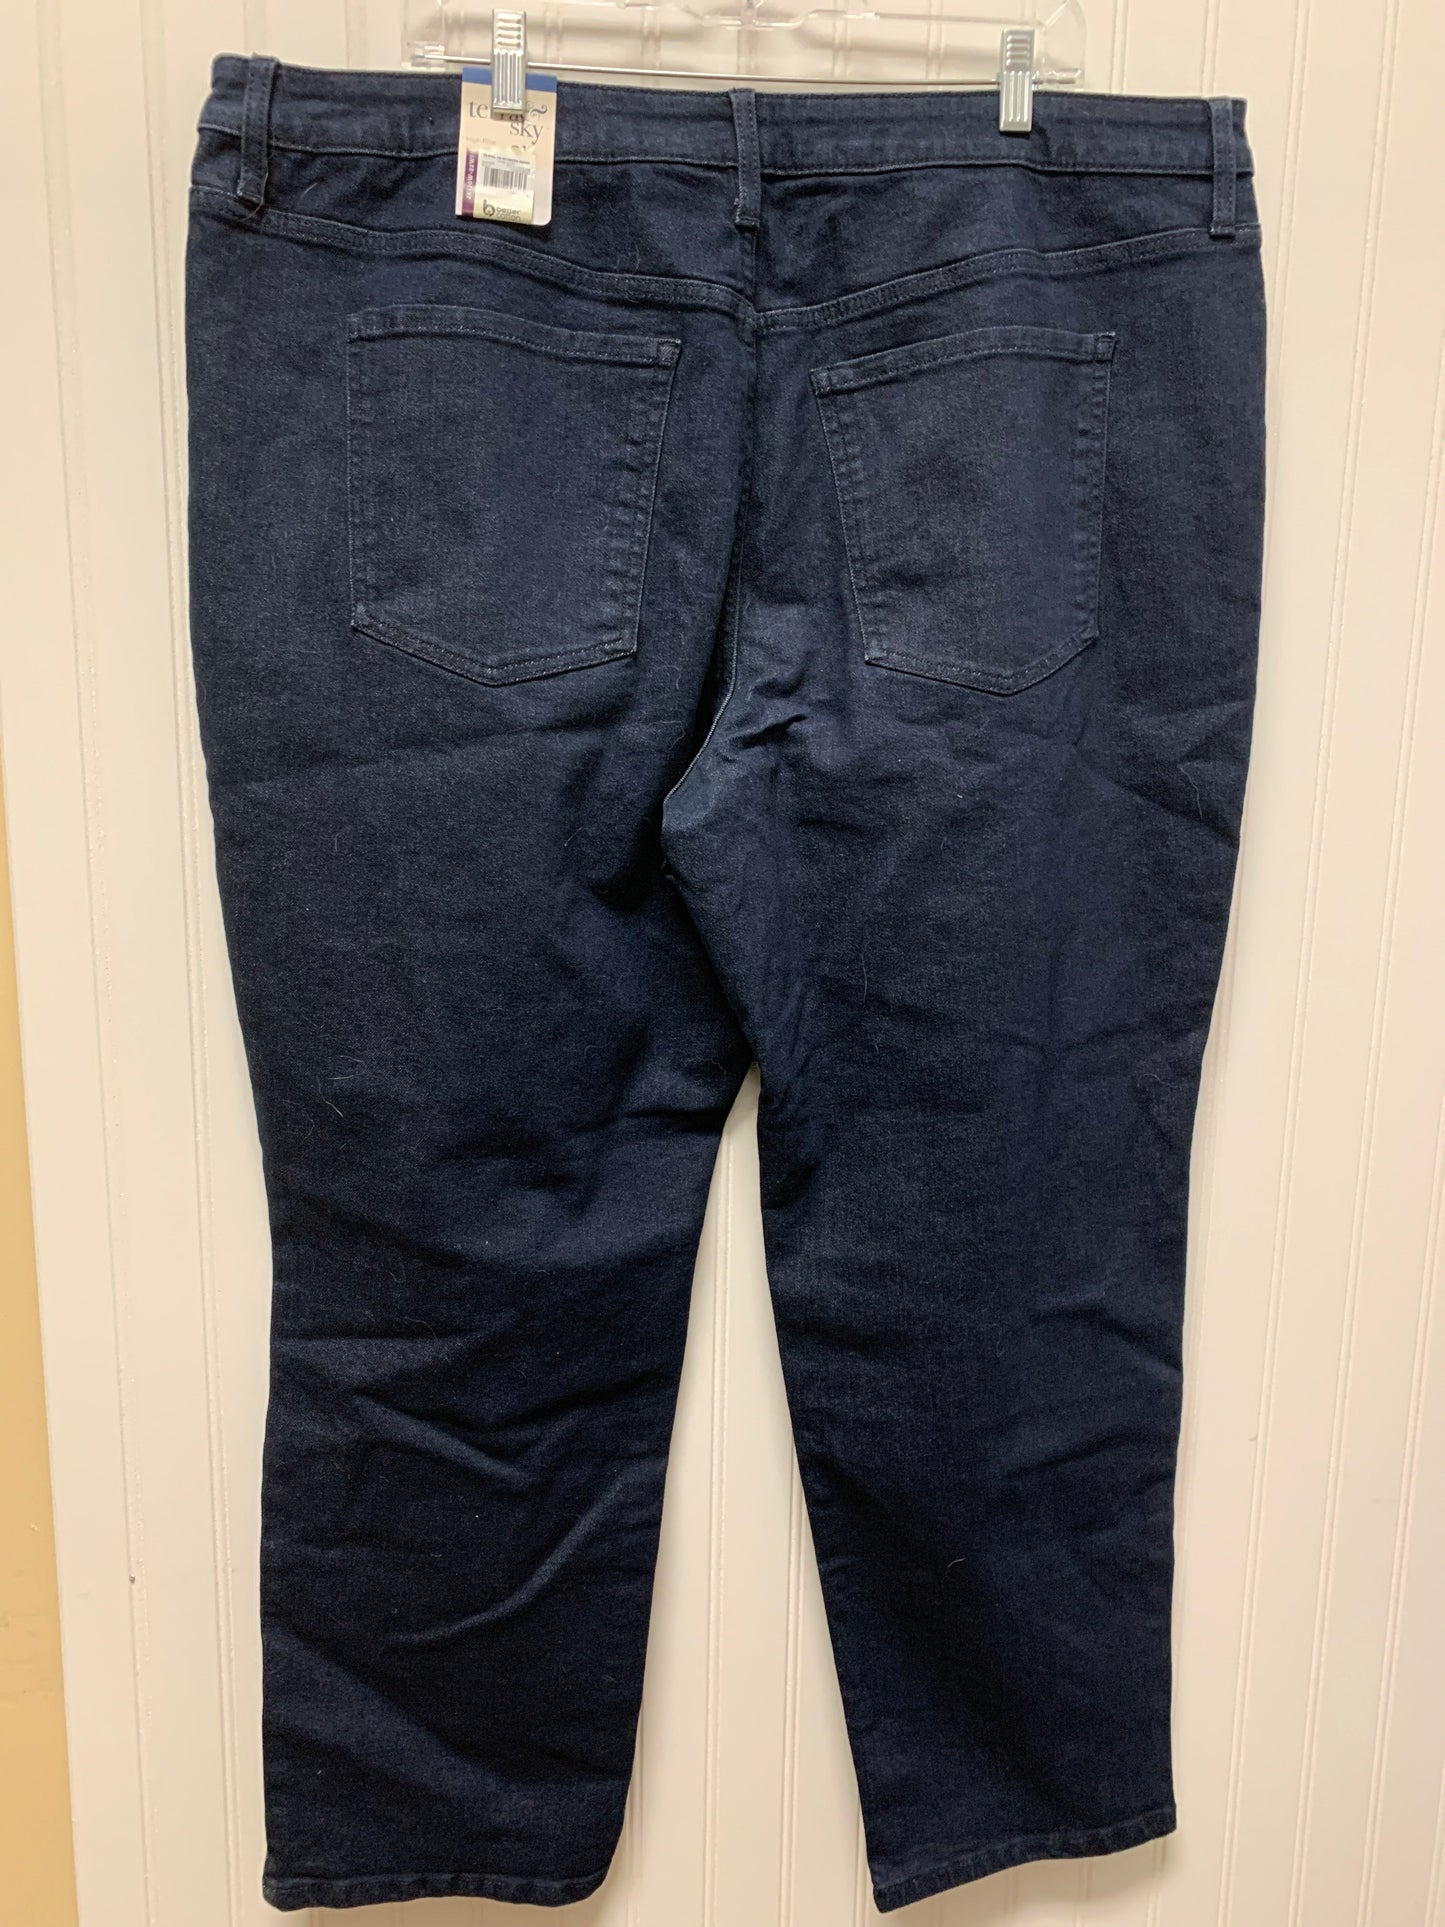 Jeans Boot Cut By Terra & Sky  Size: 20w